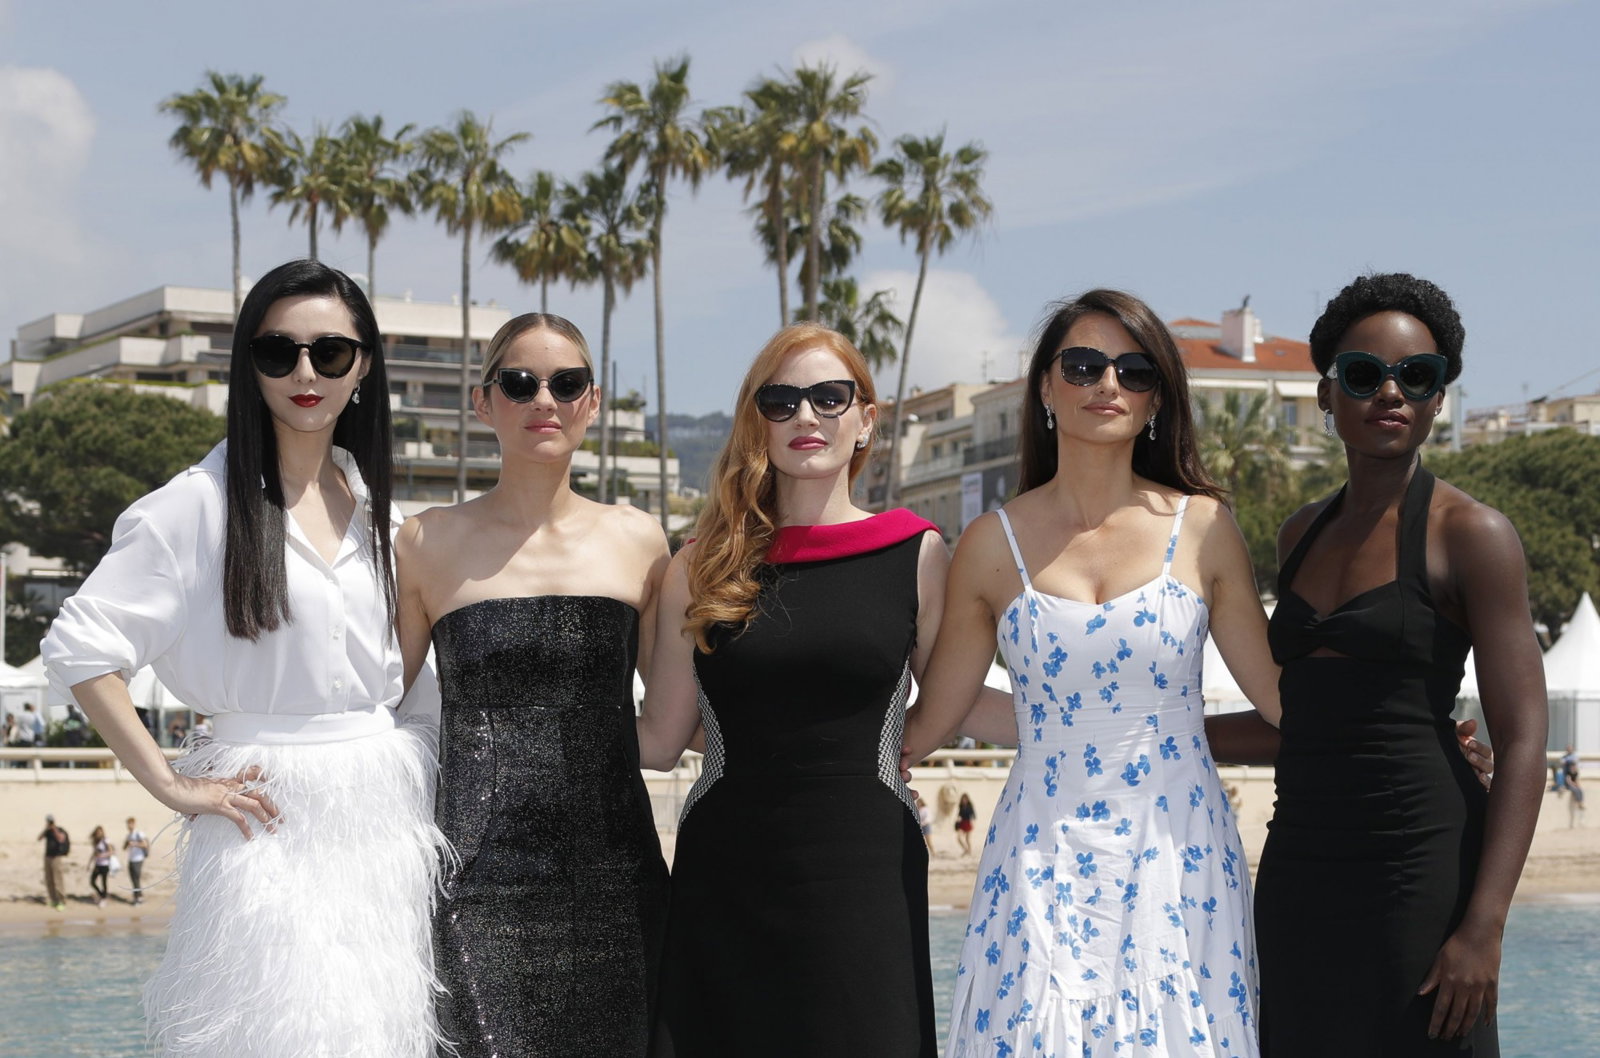 《355》为全女班的间谍动作片，演员包括范冰冰（左起）、玛莉咏柯蒂、洁西卡查斯坦、玛莉咏柯蒂亚、彭妮露古丝及露 皮塔尼永奥。